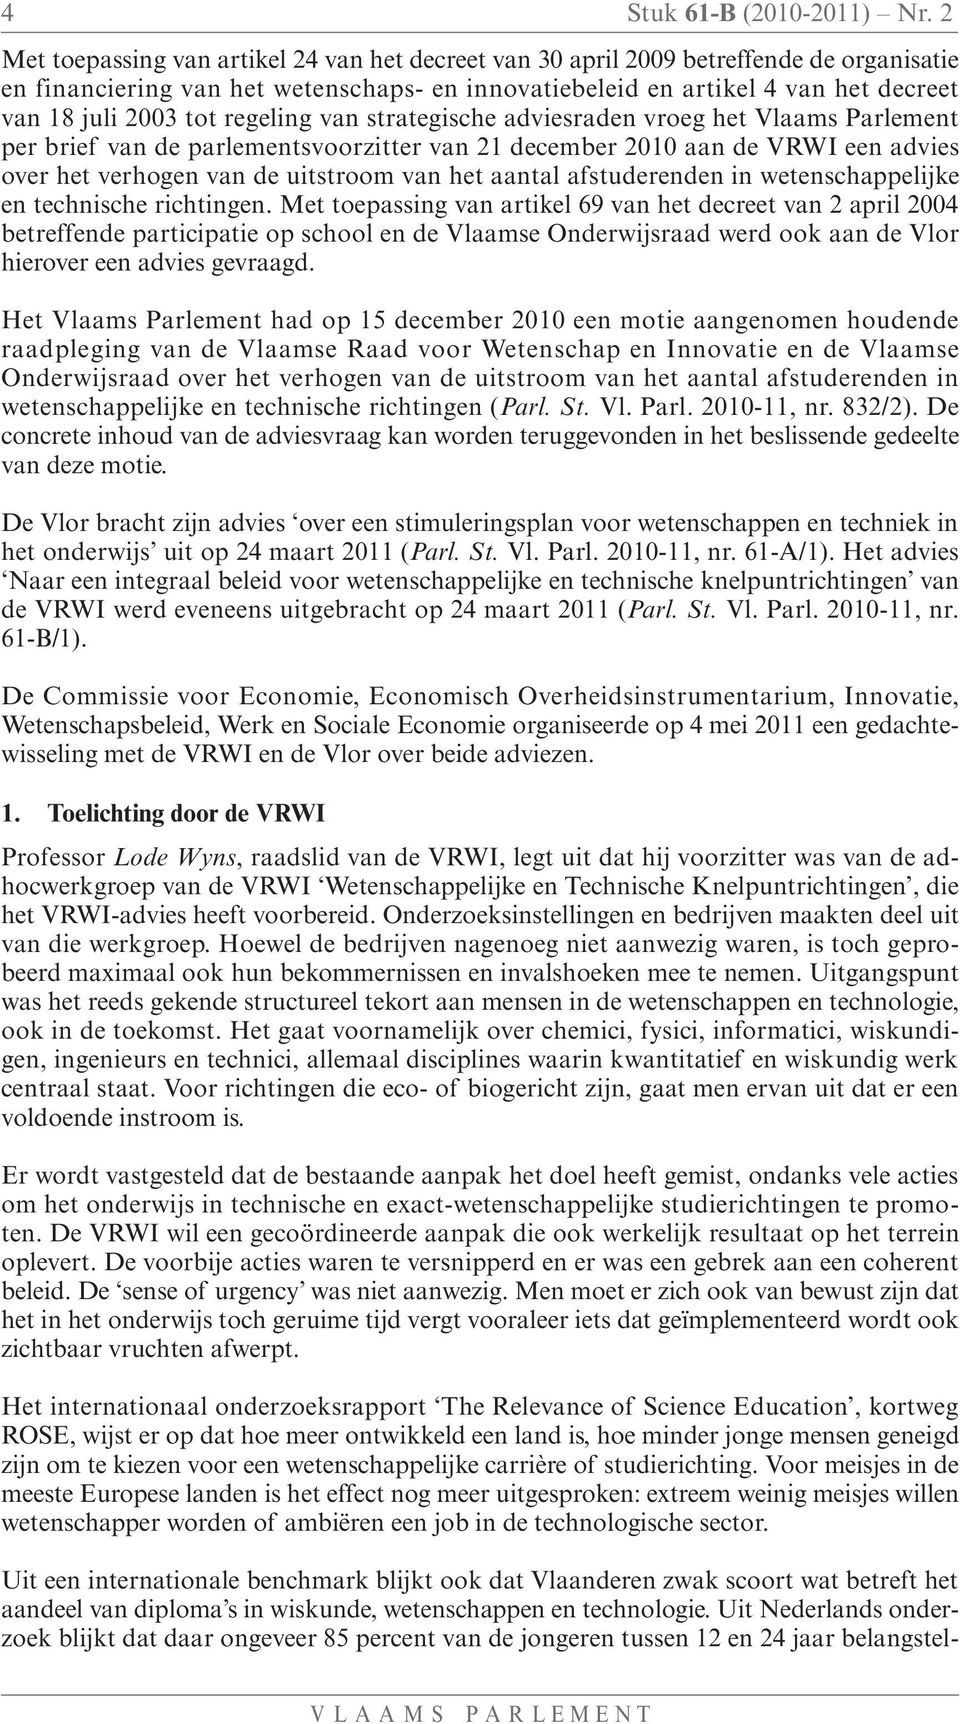 regeling van strategische adviesraden vroeg het Vlaams Parlement per brief van de parlementsvoorzitter van 21 december 2010 aan de VRWI een advies over het verhogen van de uitstroom van het aantal